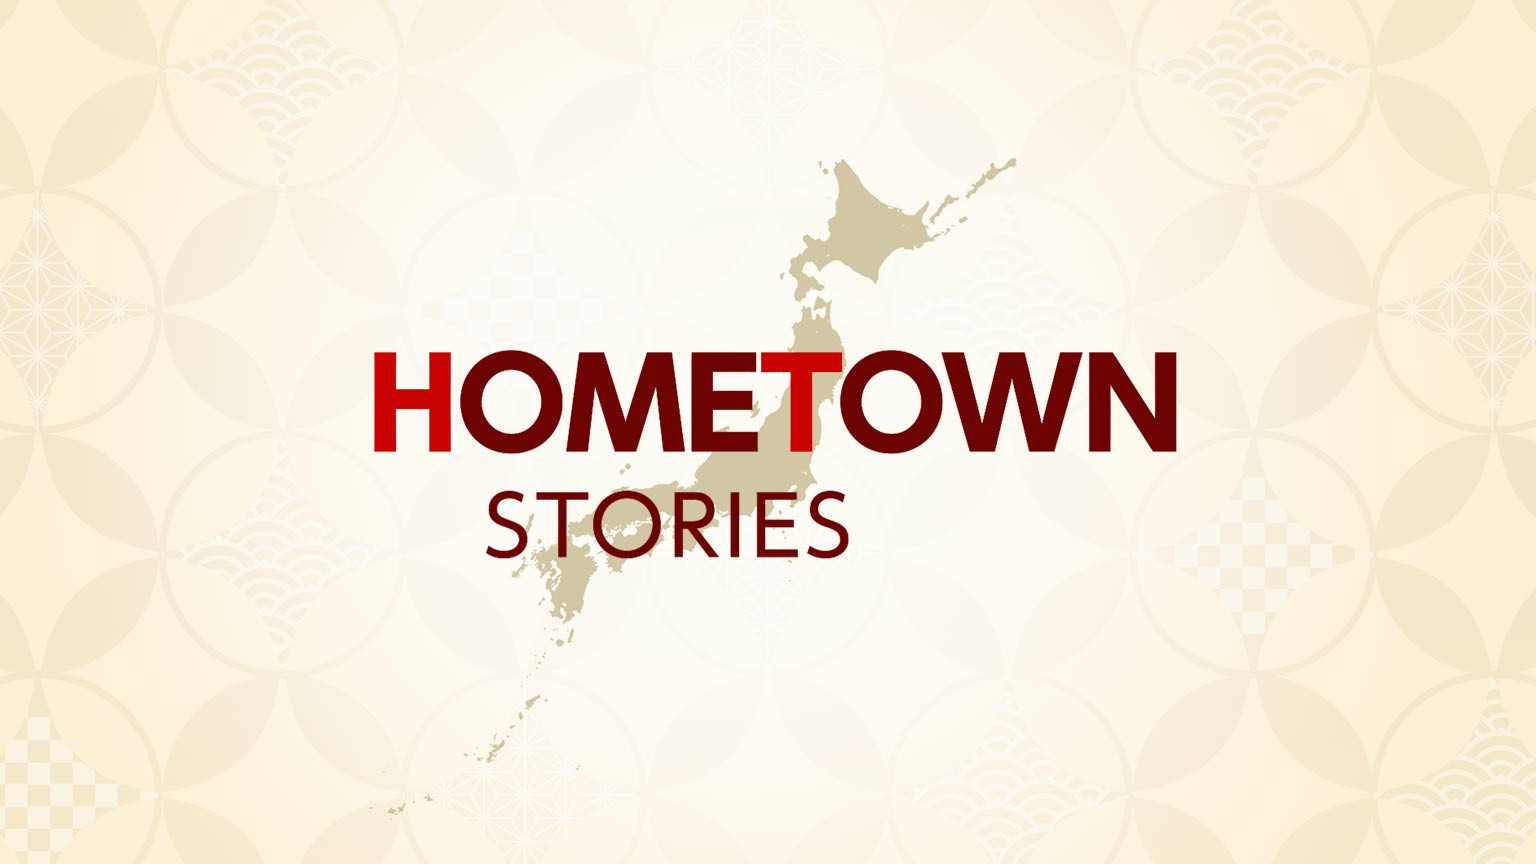 เรื่องเล่าจากบ้านเกิด
Hometown Stories